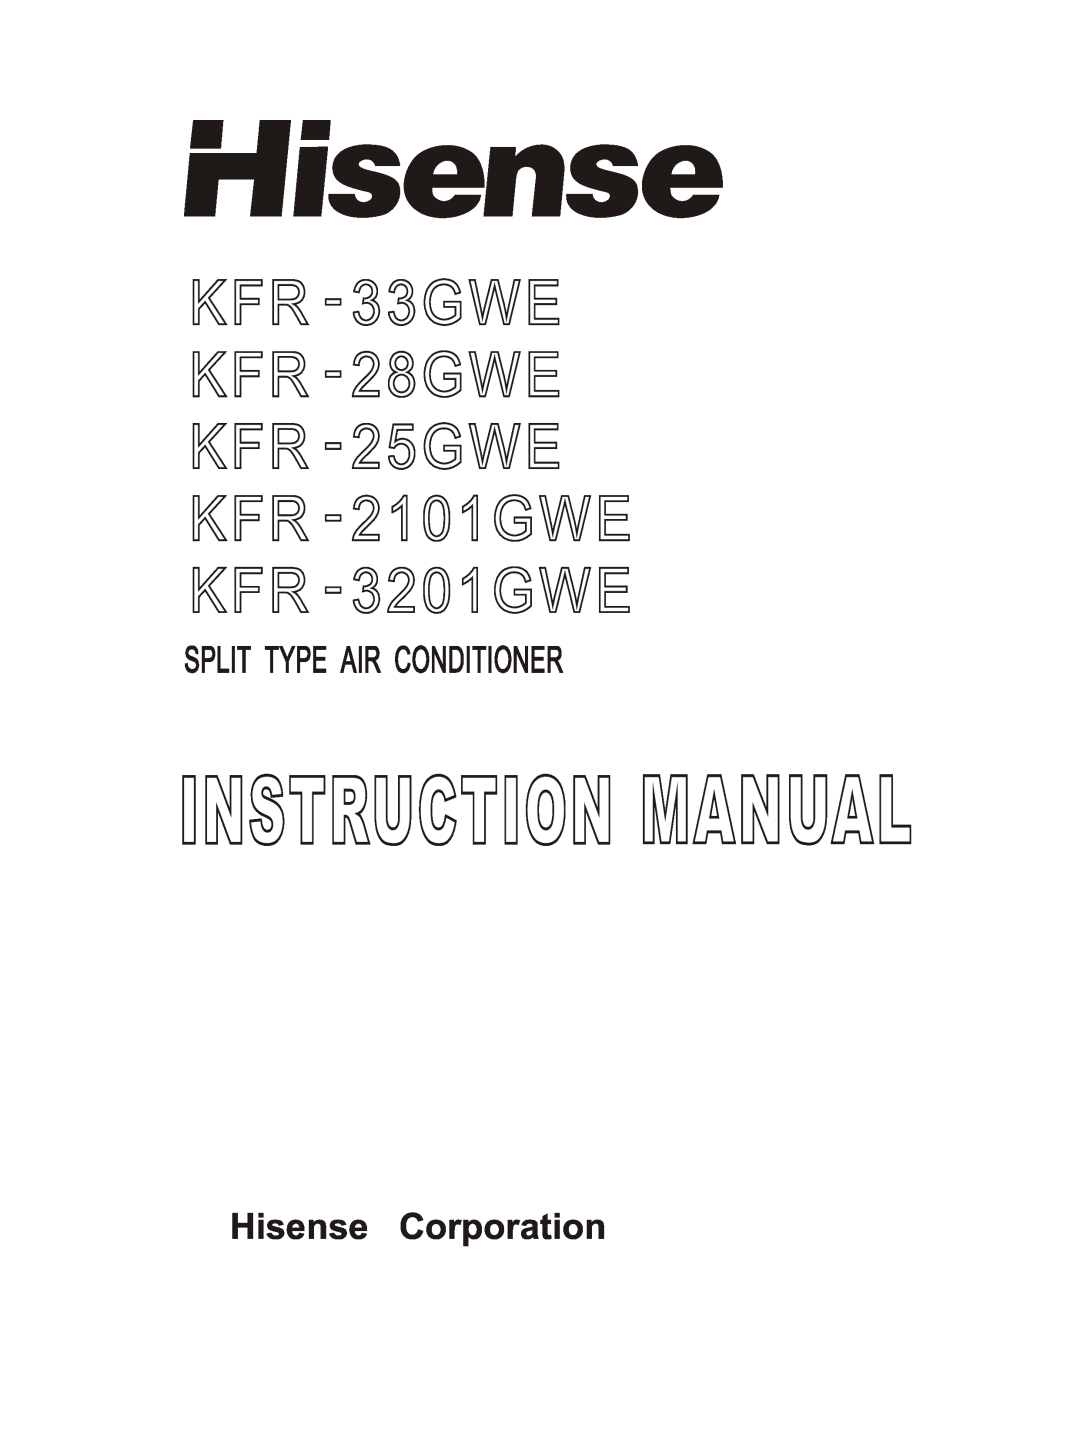 Hisense Group KFR 33GWE, KFR 3201GWE instruction manual KFR - 33GWE KFR - 28GWE KFR - 25GWE KFR - 2101GWE, KFR - 3201GWE 